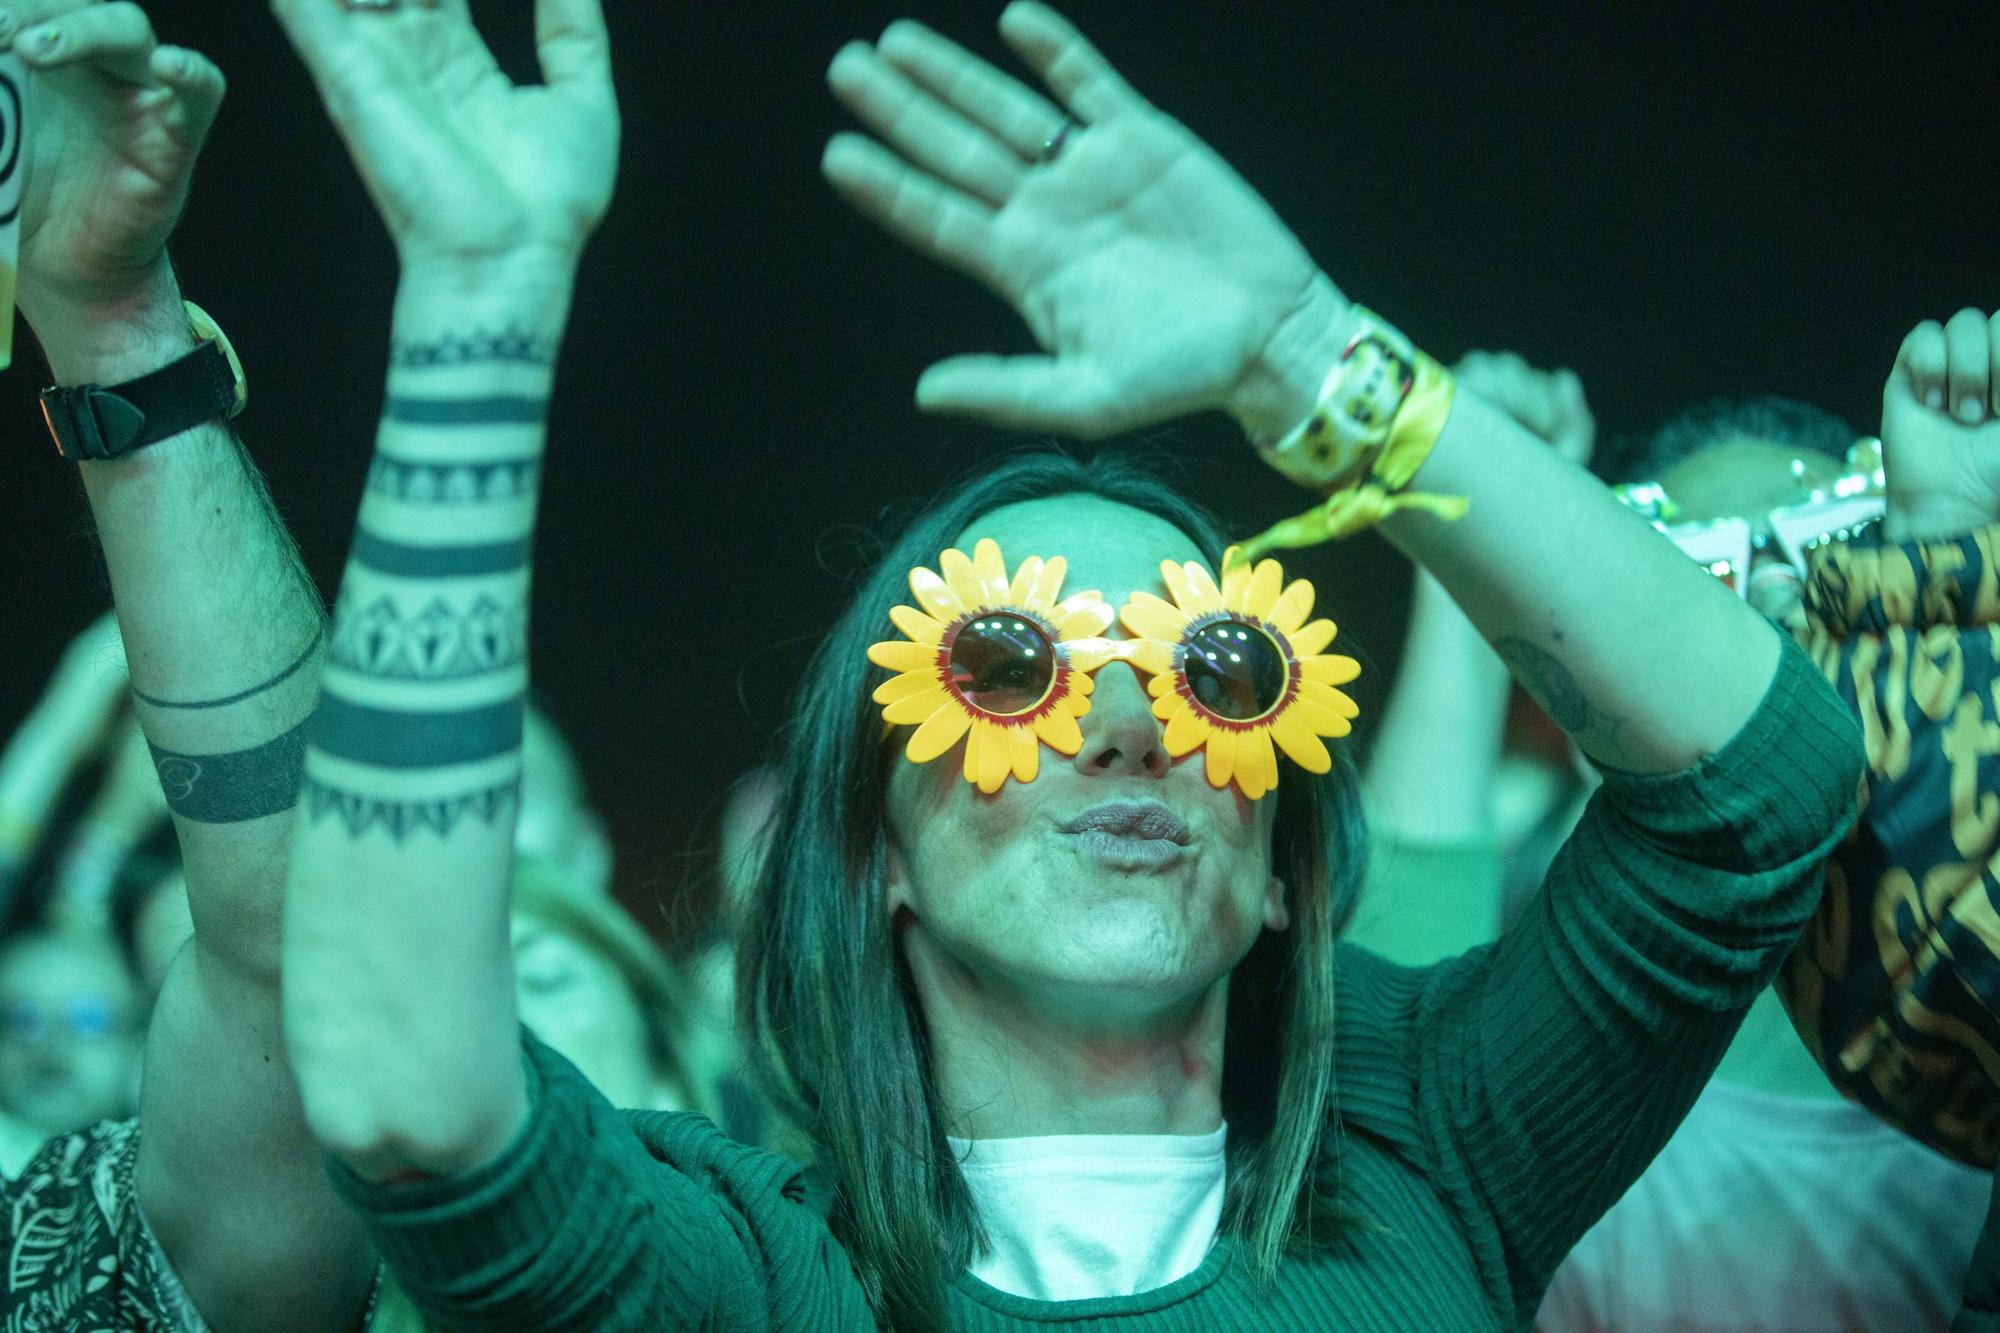 Mit den Chemical Brothers geht das Mallorca Live Festival zu Ende - Eindrück vom letzten Tag